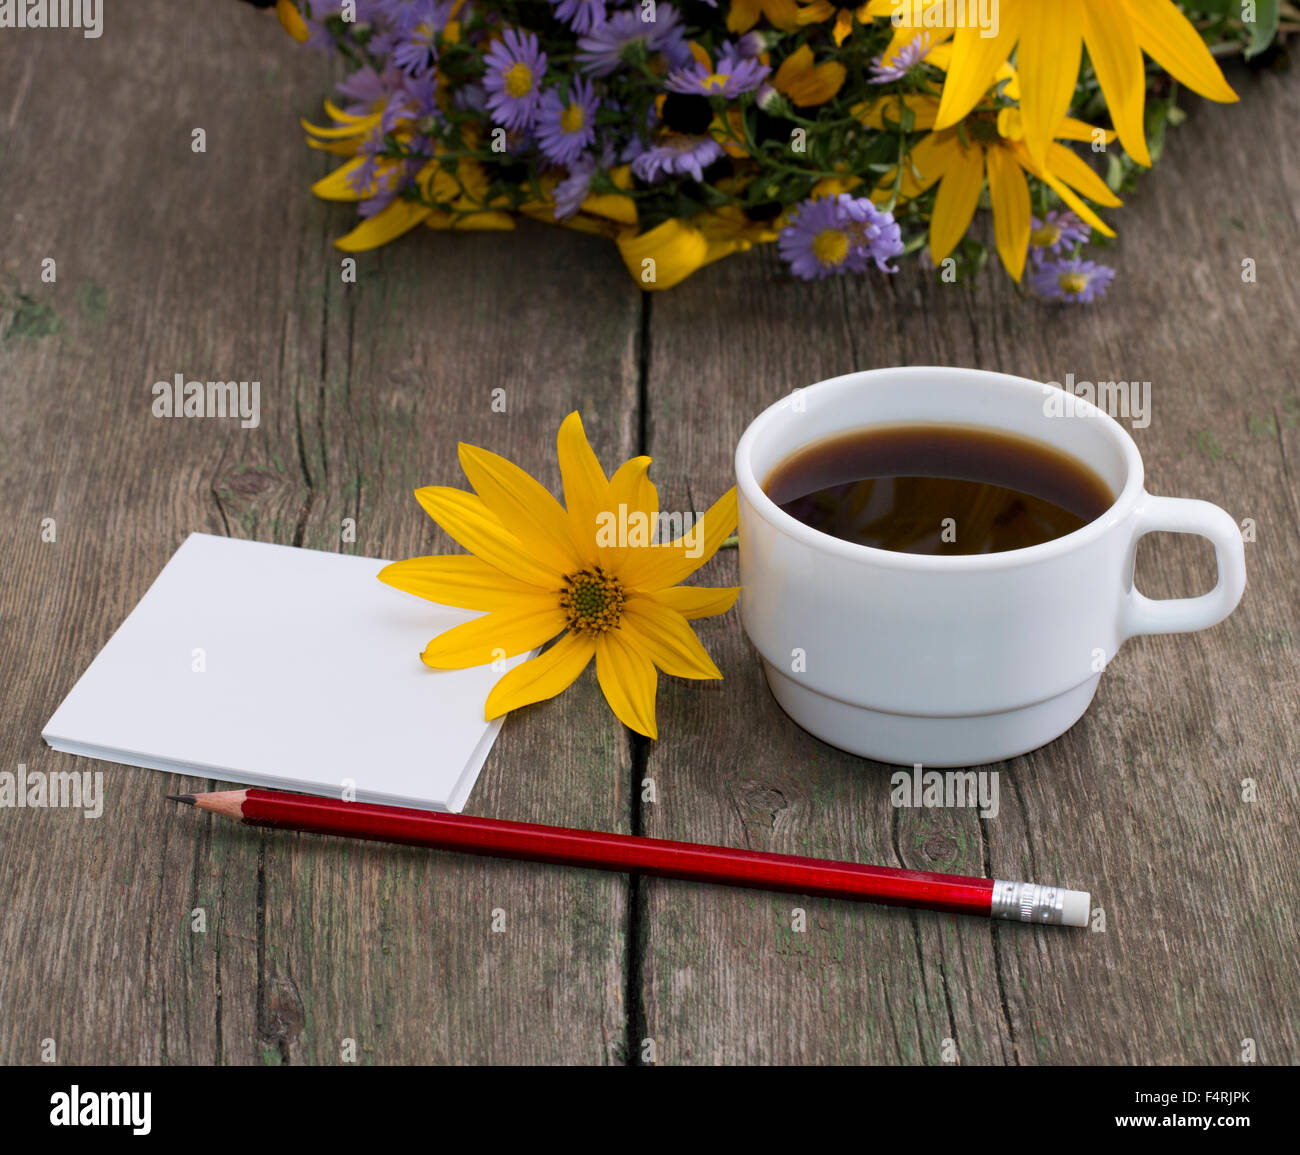 Le café, fleur jaune, un crayon de papier et de fleurs sauvages, une nature morte Banque D'Images